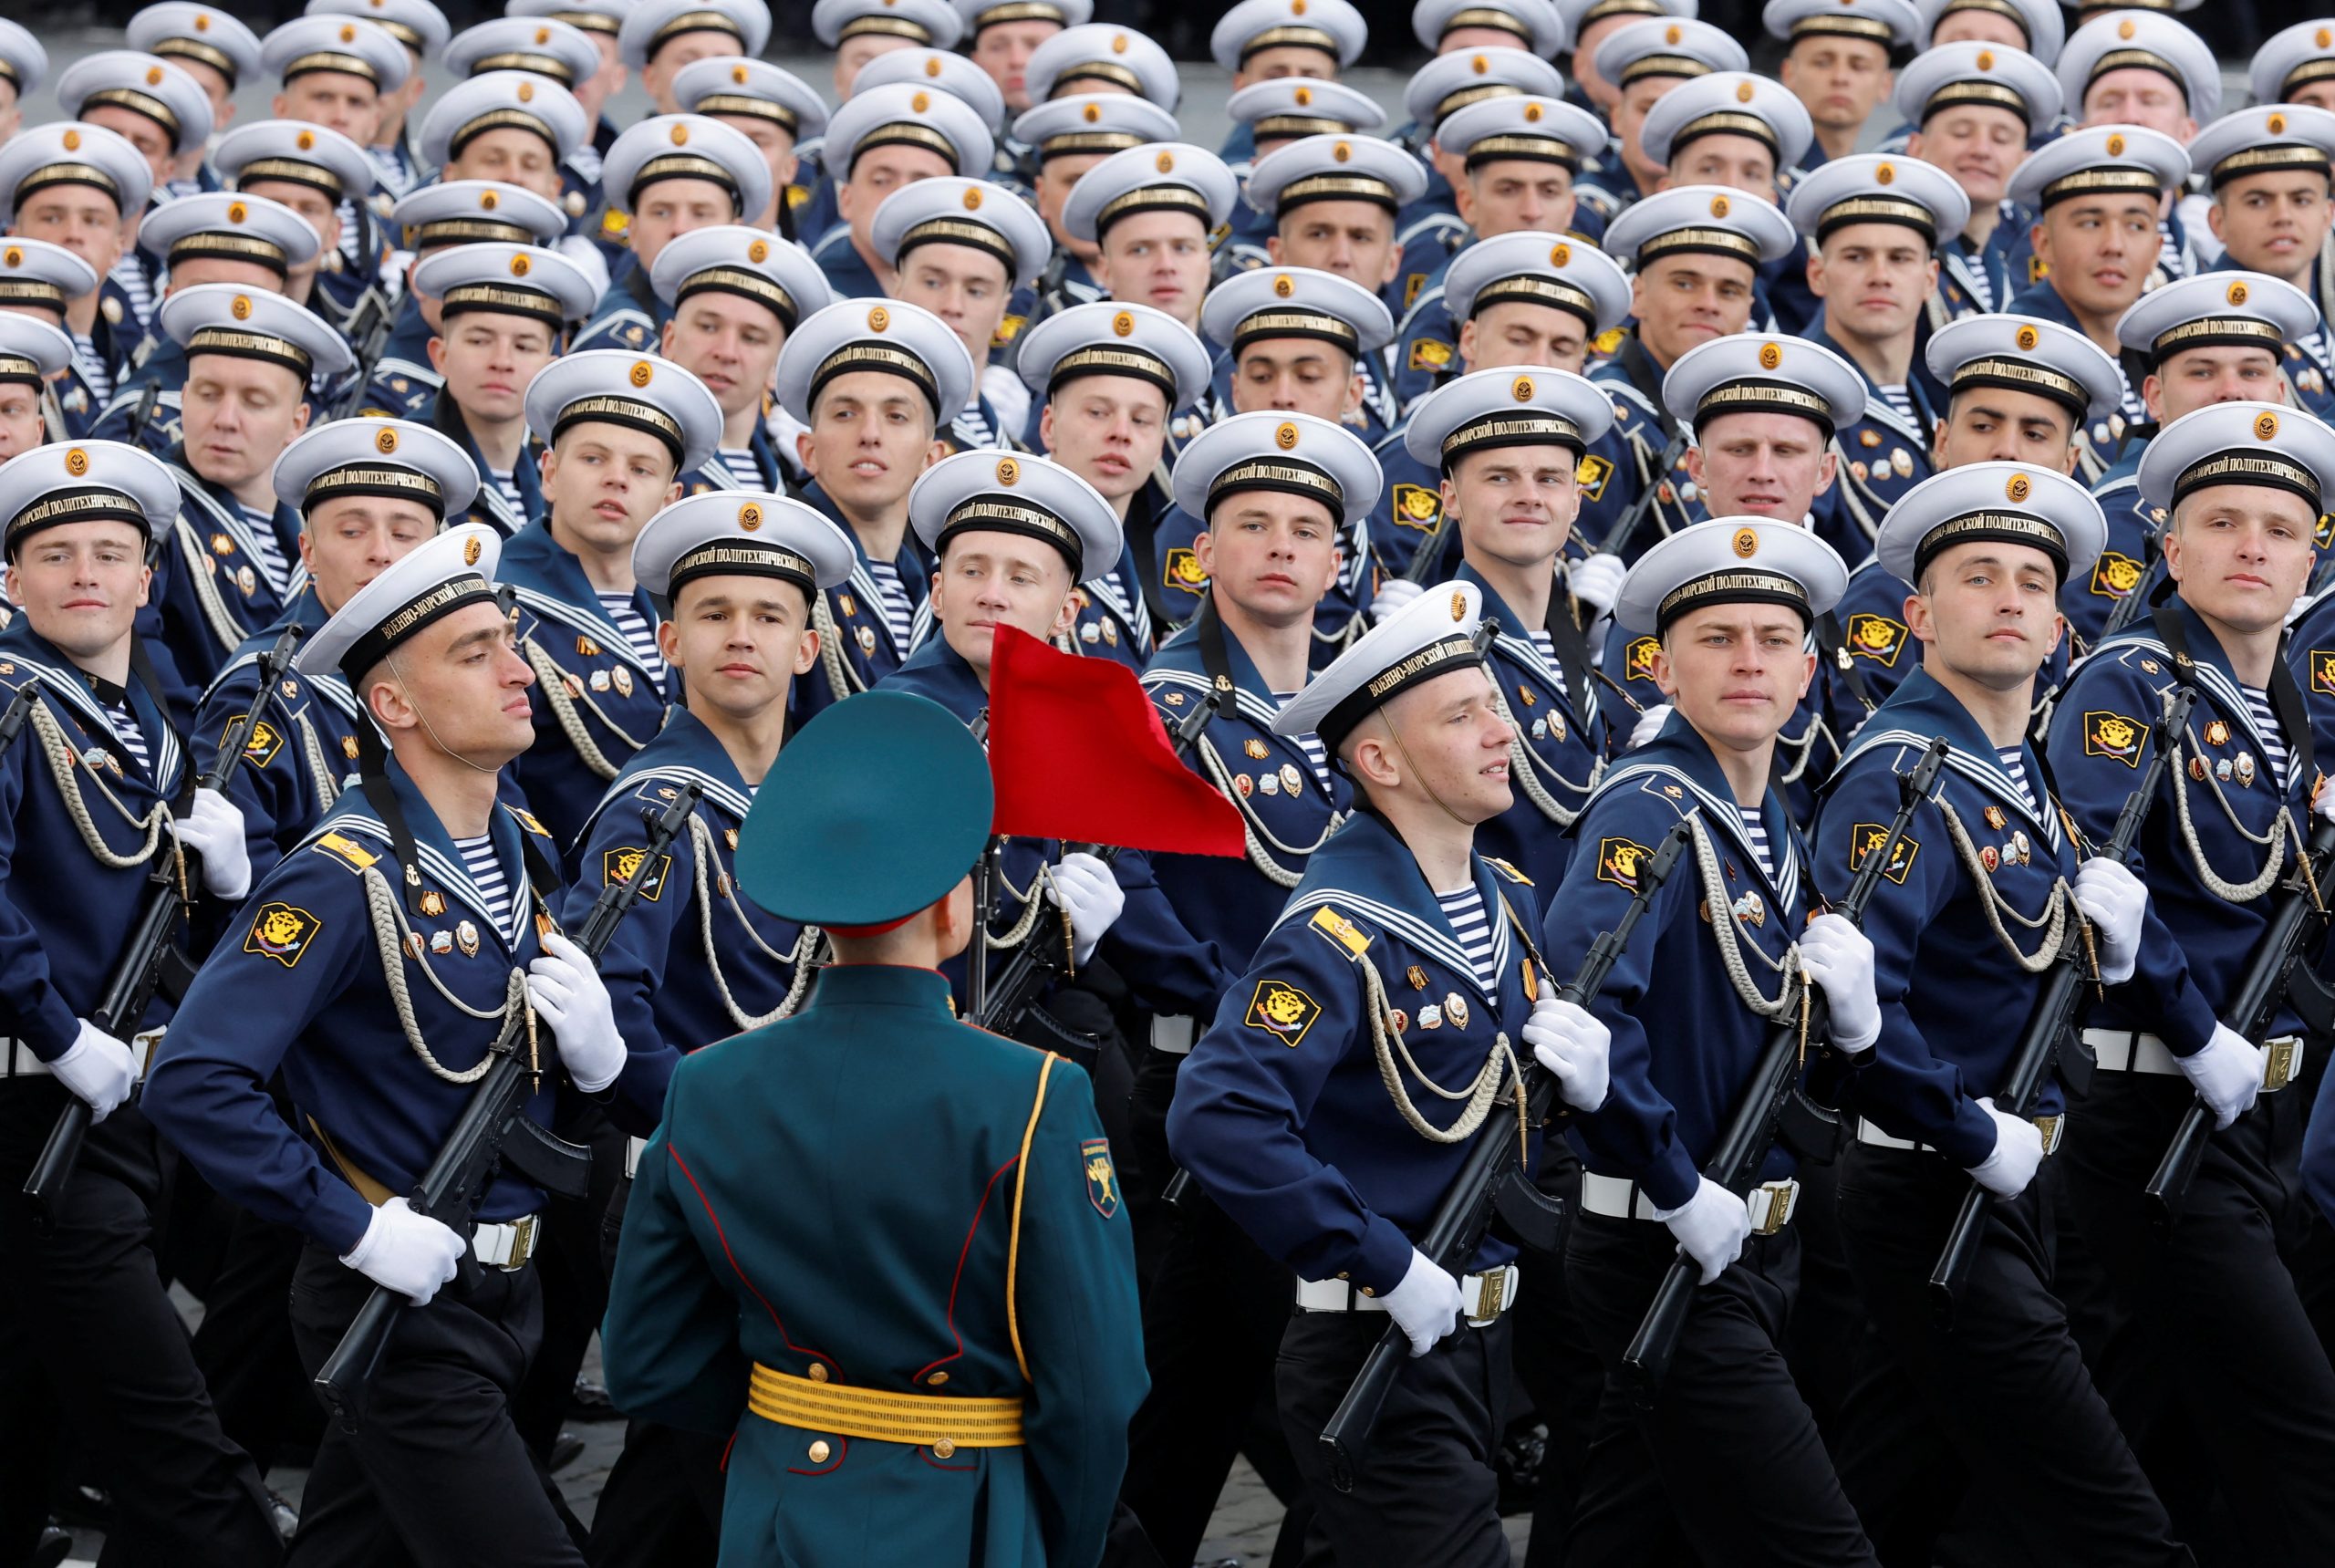 Russische mariniers lopen mee in de parade op de Dag van de Overwinning.